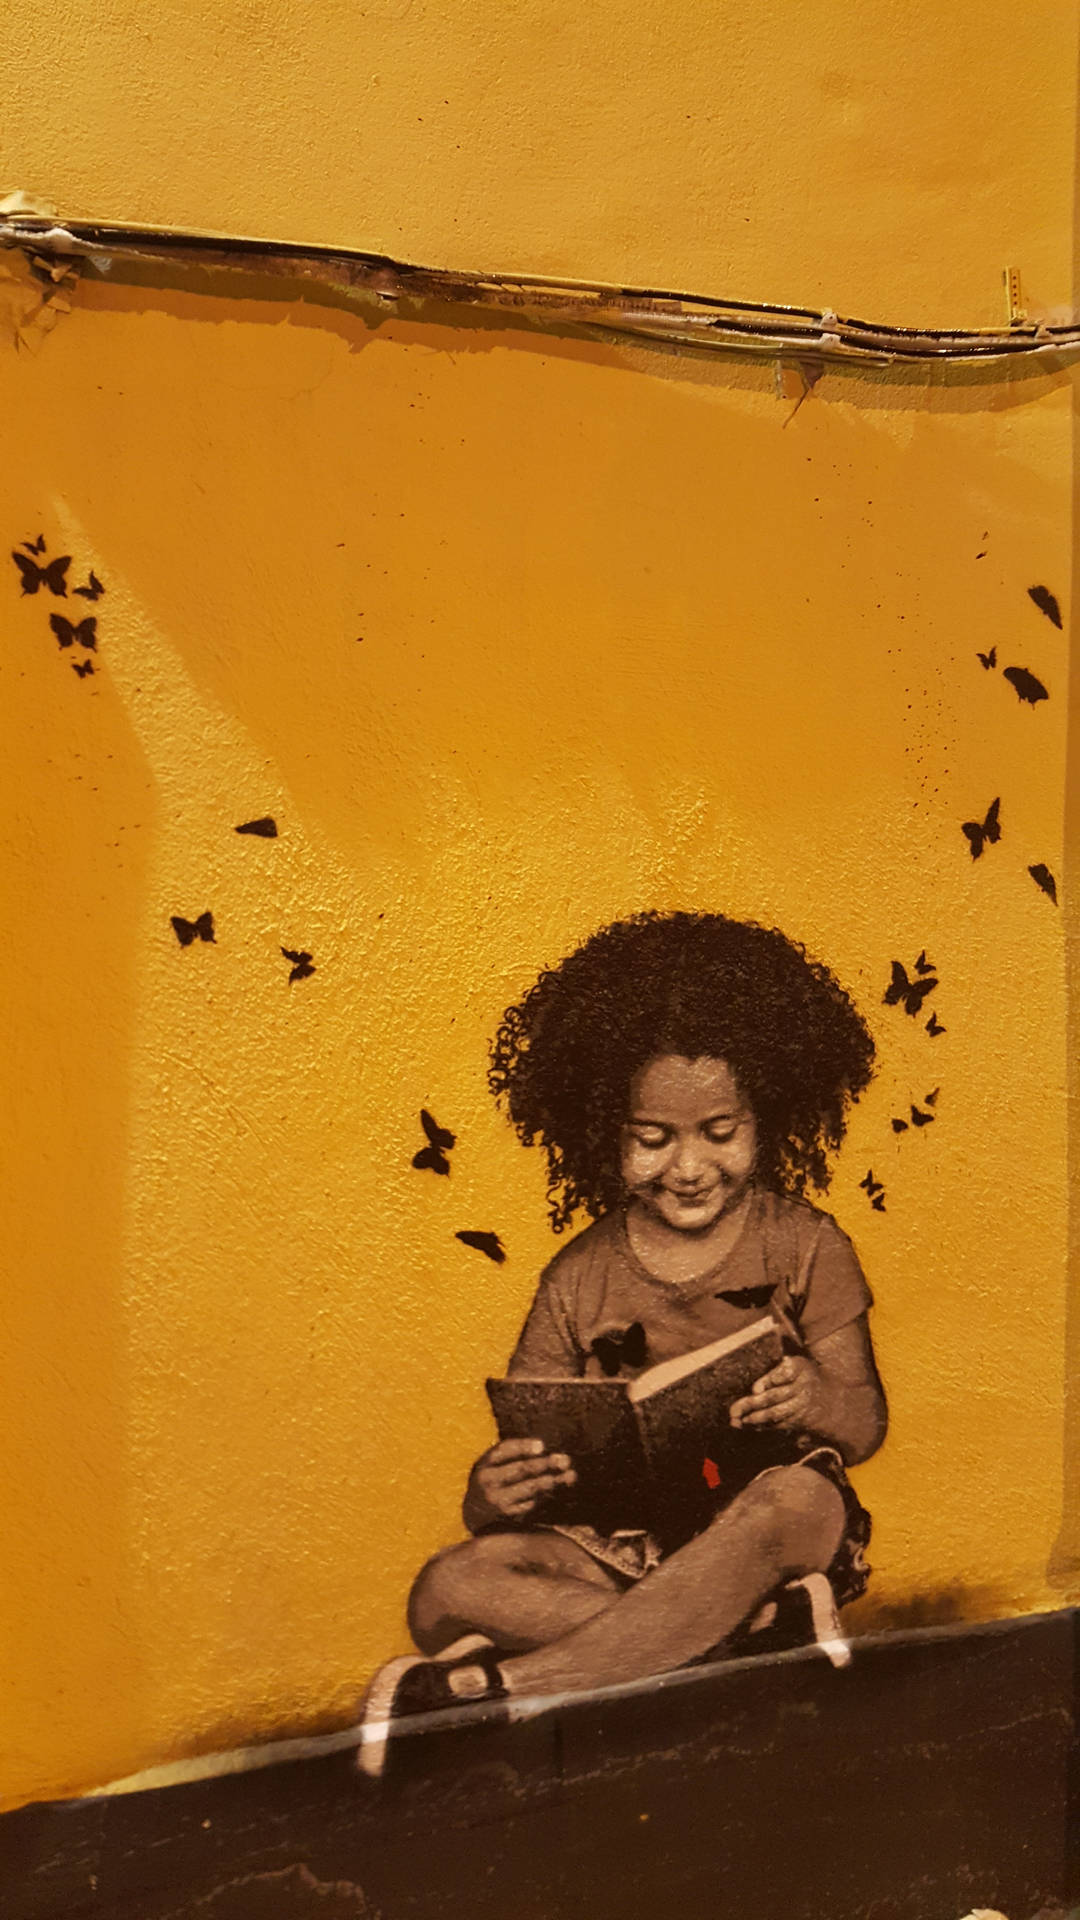 Bookworm Kid Graffiti Wallpaper